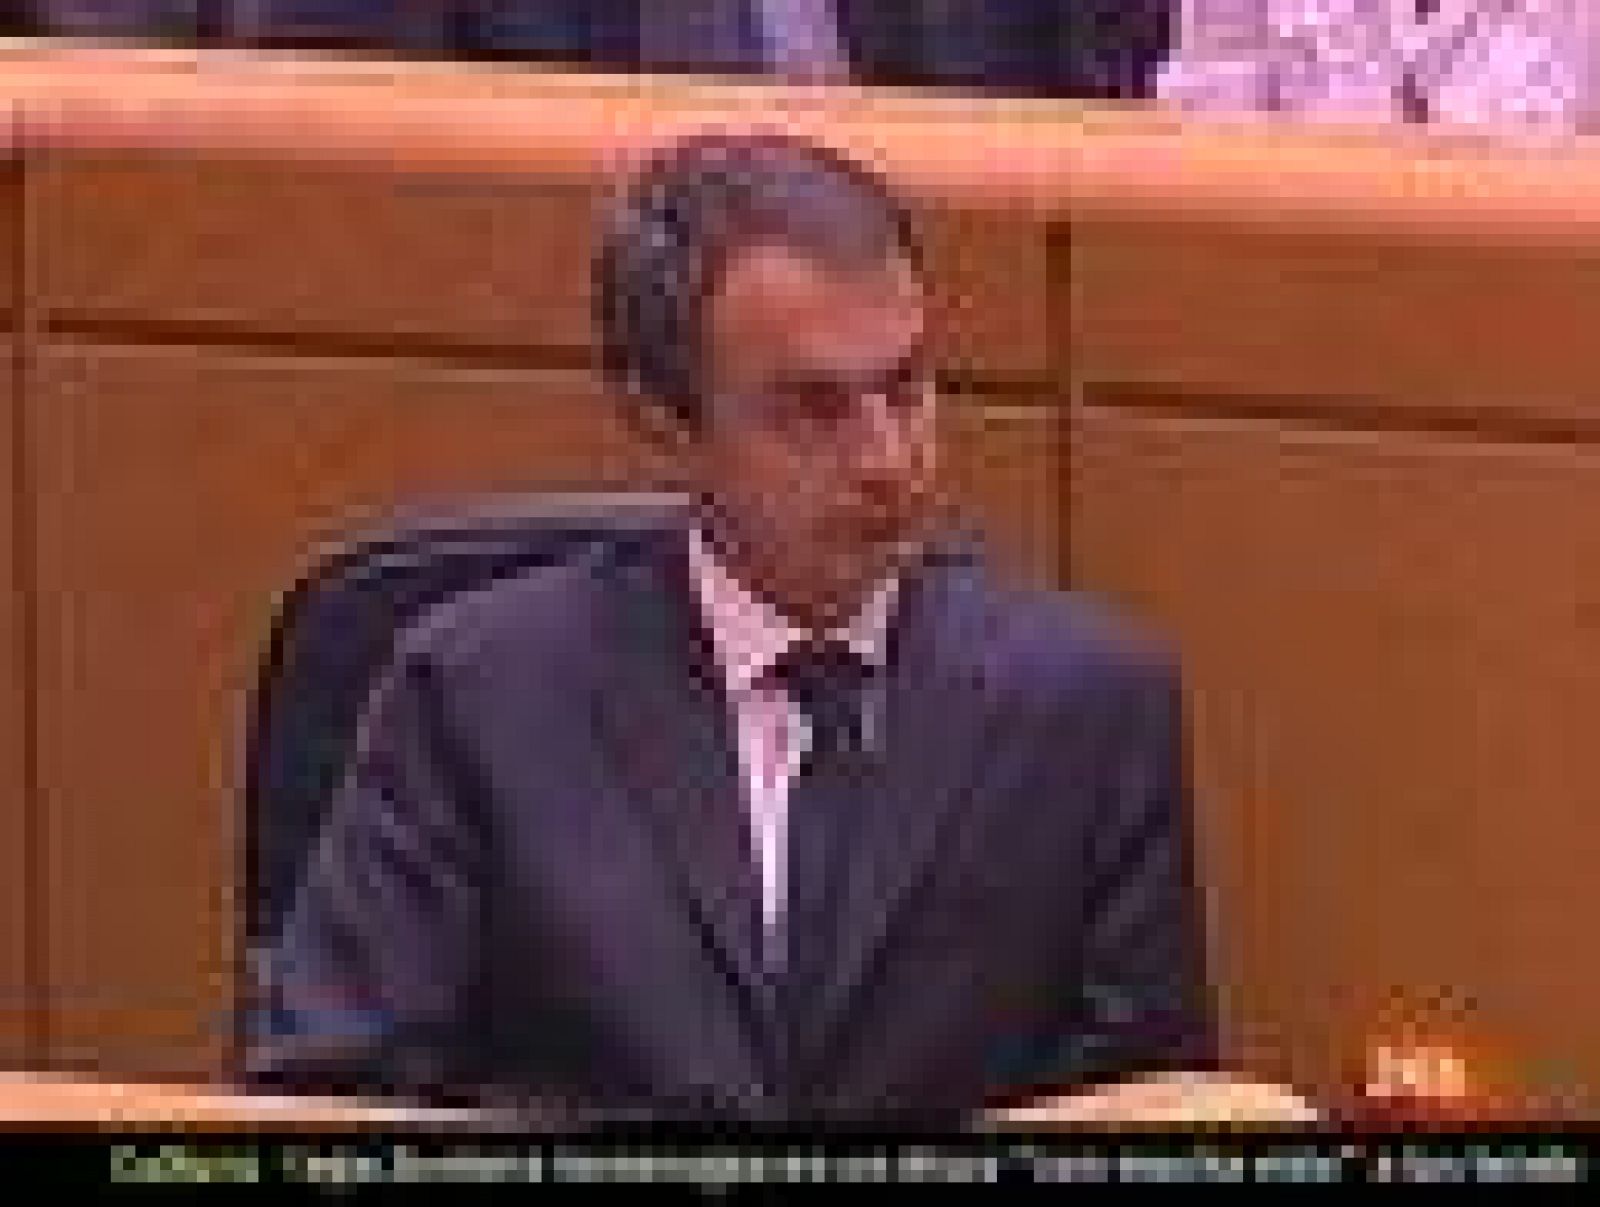 Zapatero afirma que hay razones de interés general para concluir la legislatura